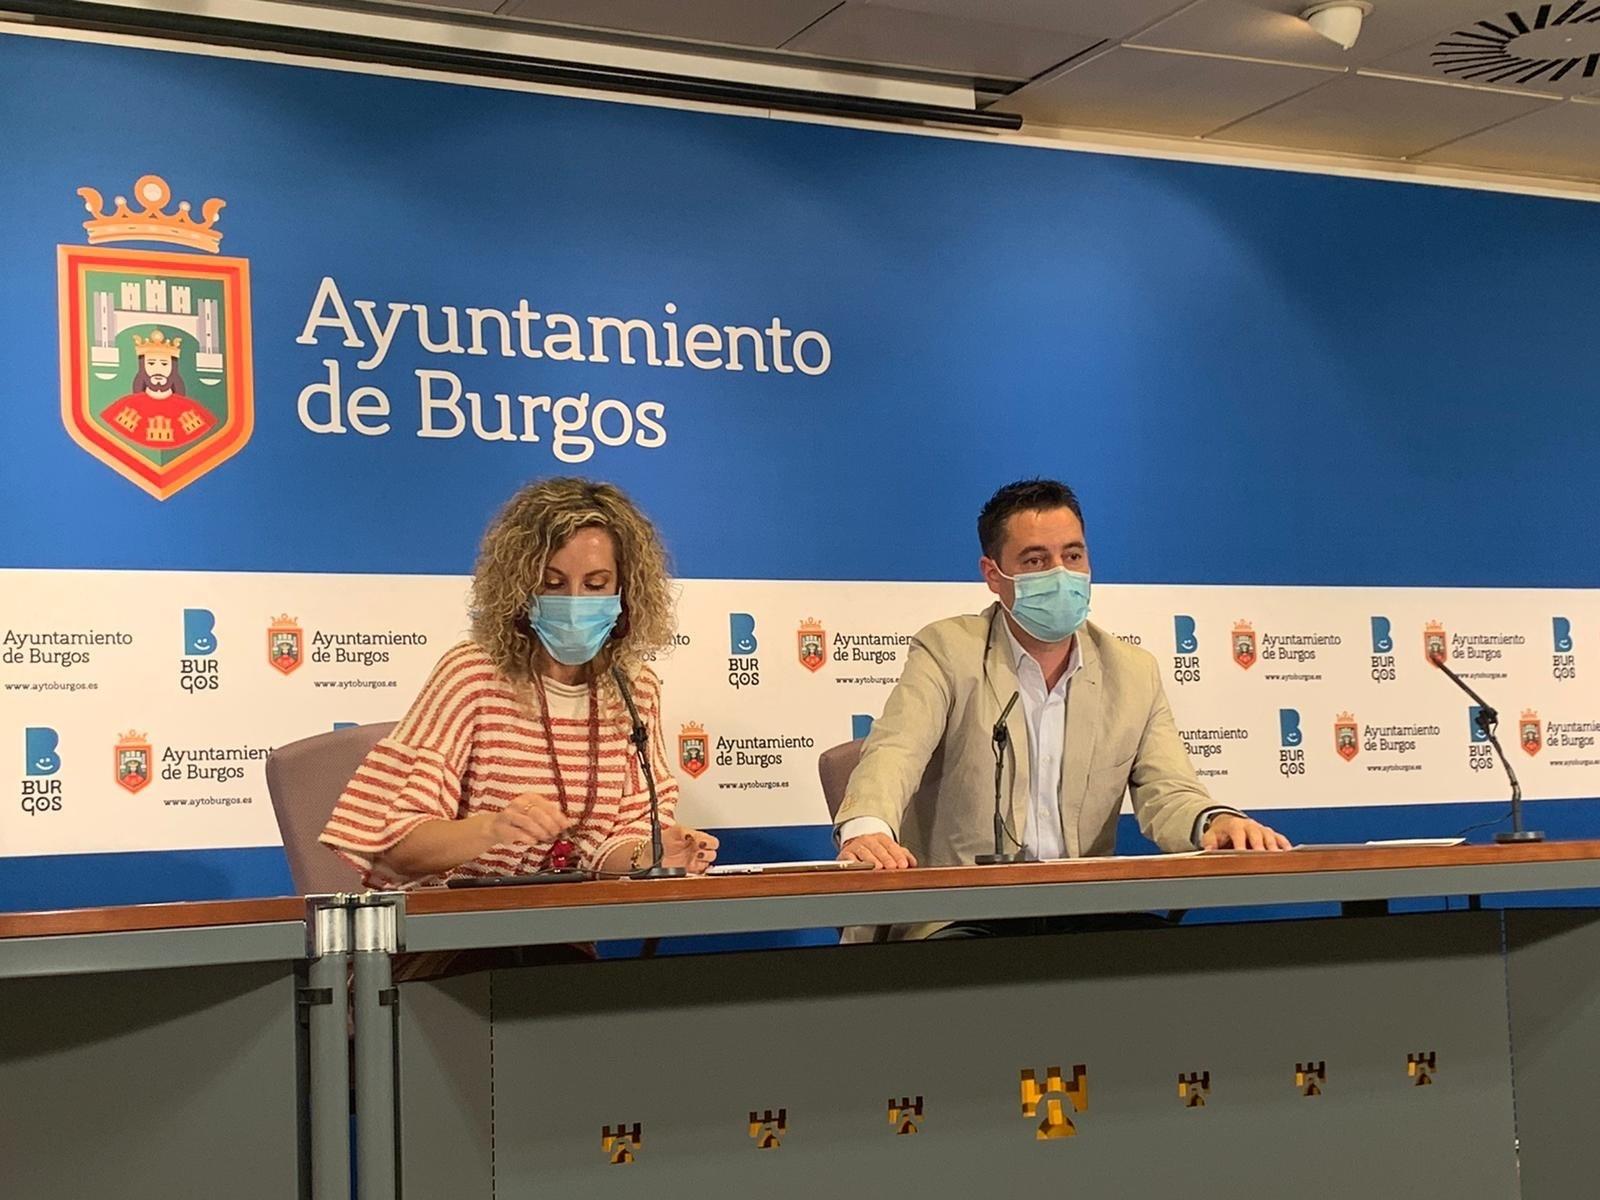  De la Rosa advierte de la situación "muy complicada" de Burgos. Europa Press